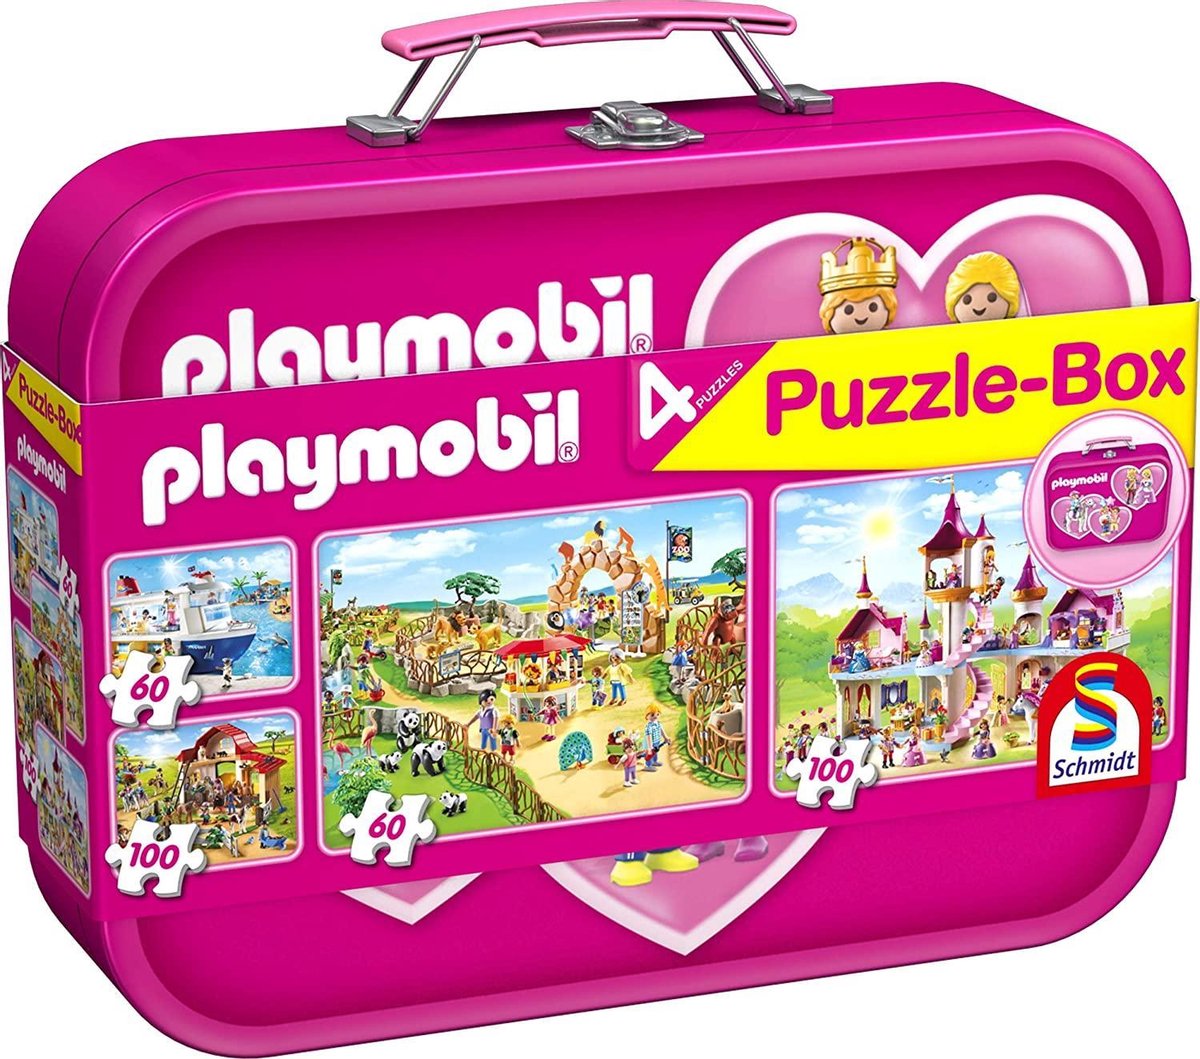 Schmidt Playmobil Puzzle Box pour enfants 60/100 PIECES 4x différentes photos 